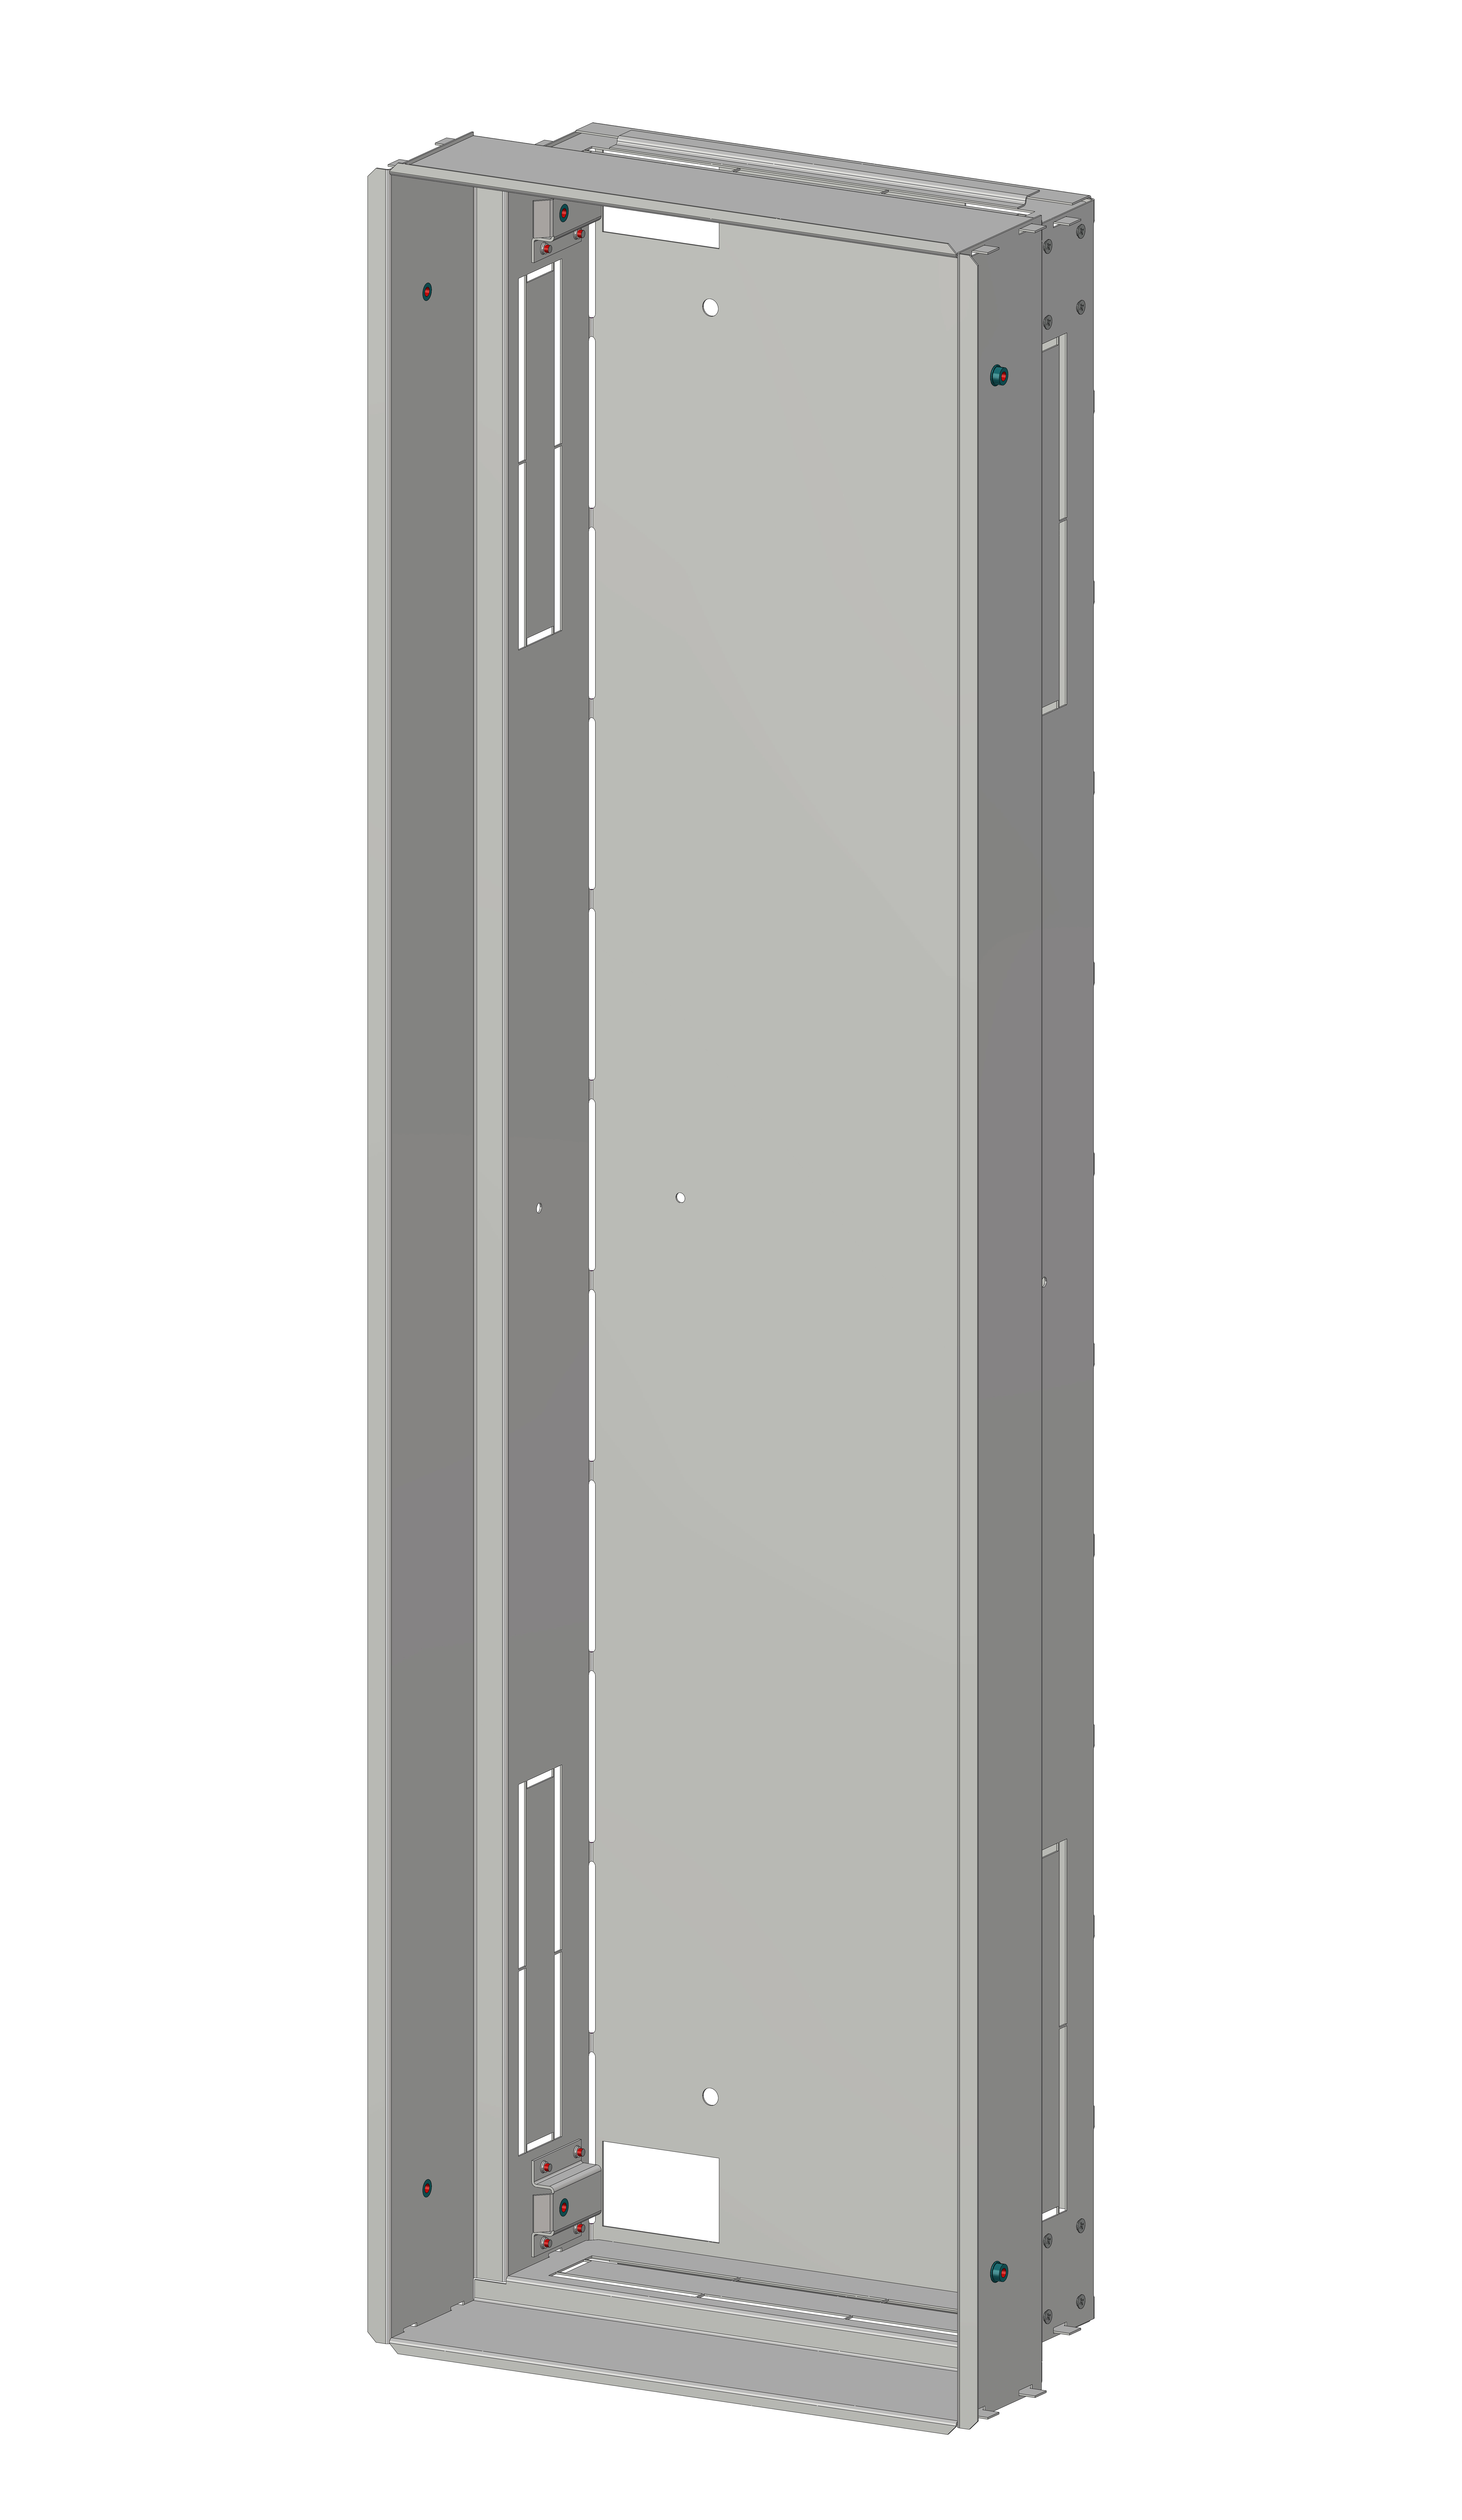 Mauerwanne 1-24, 3-stufiges System 180mm tief, 104TE